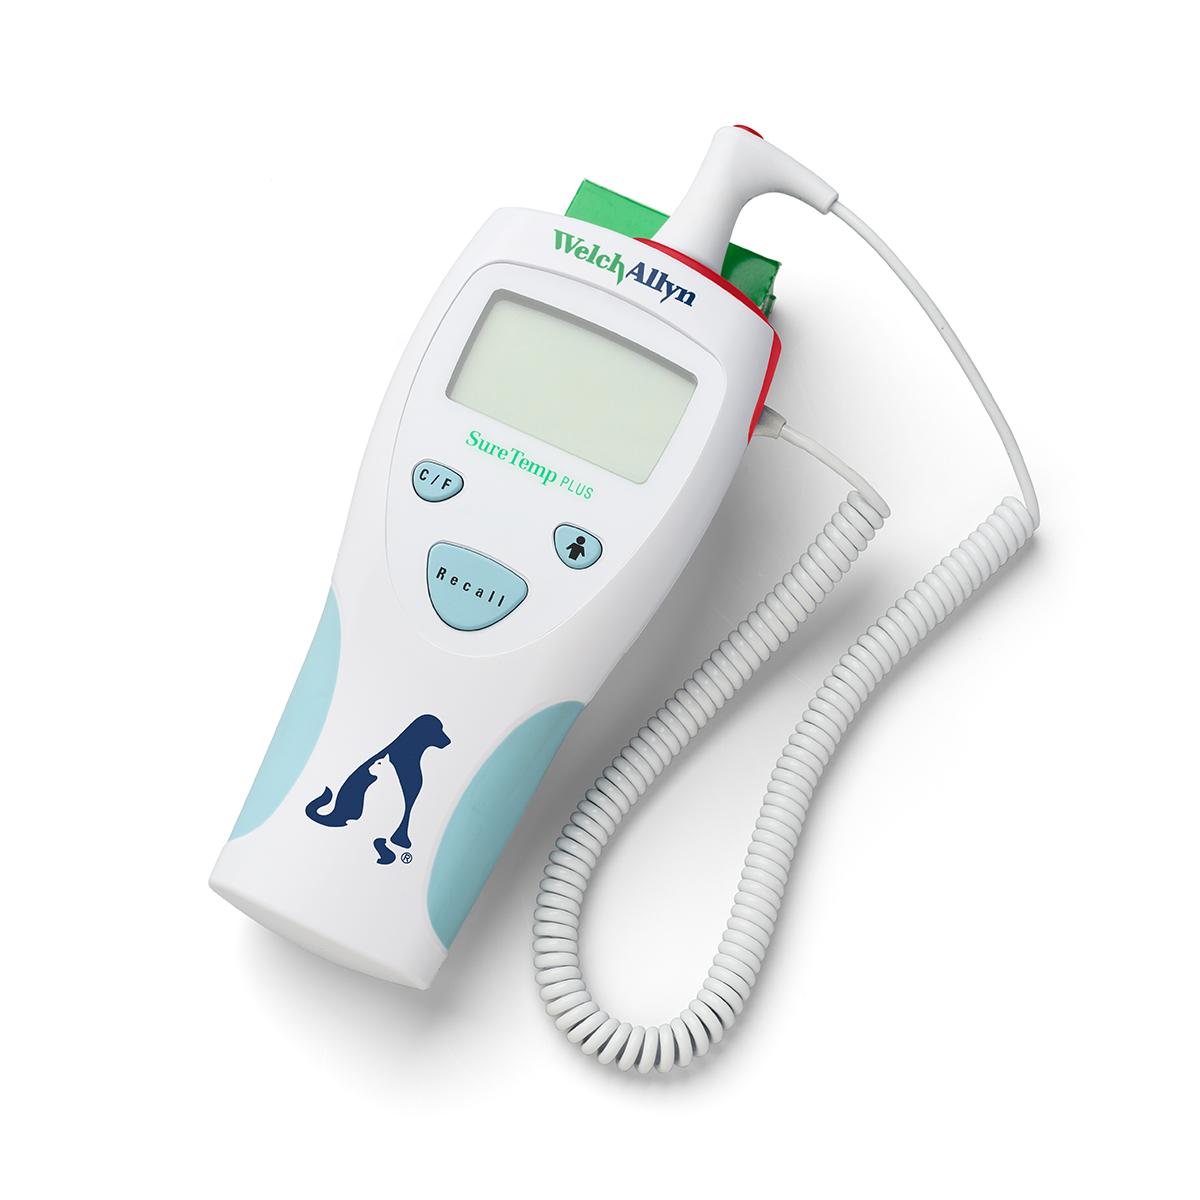 Termometro elettronico SureTemp Plus 690 Welch Allyn per uso veterinario